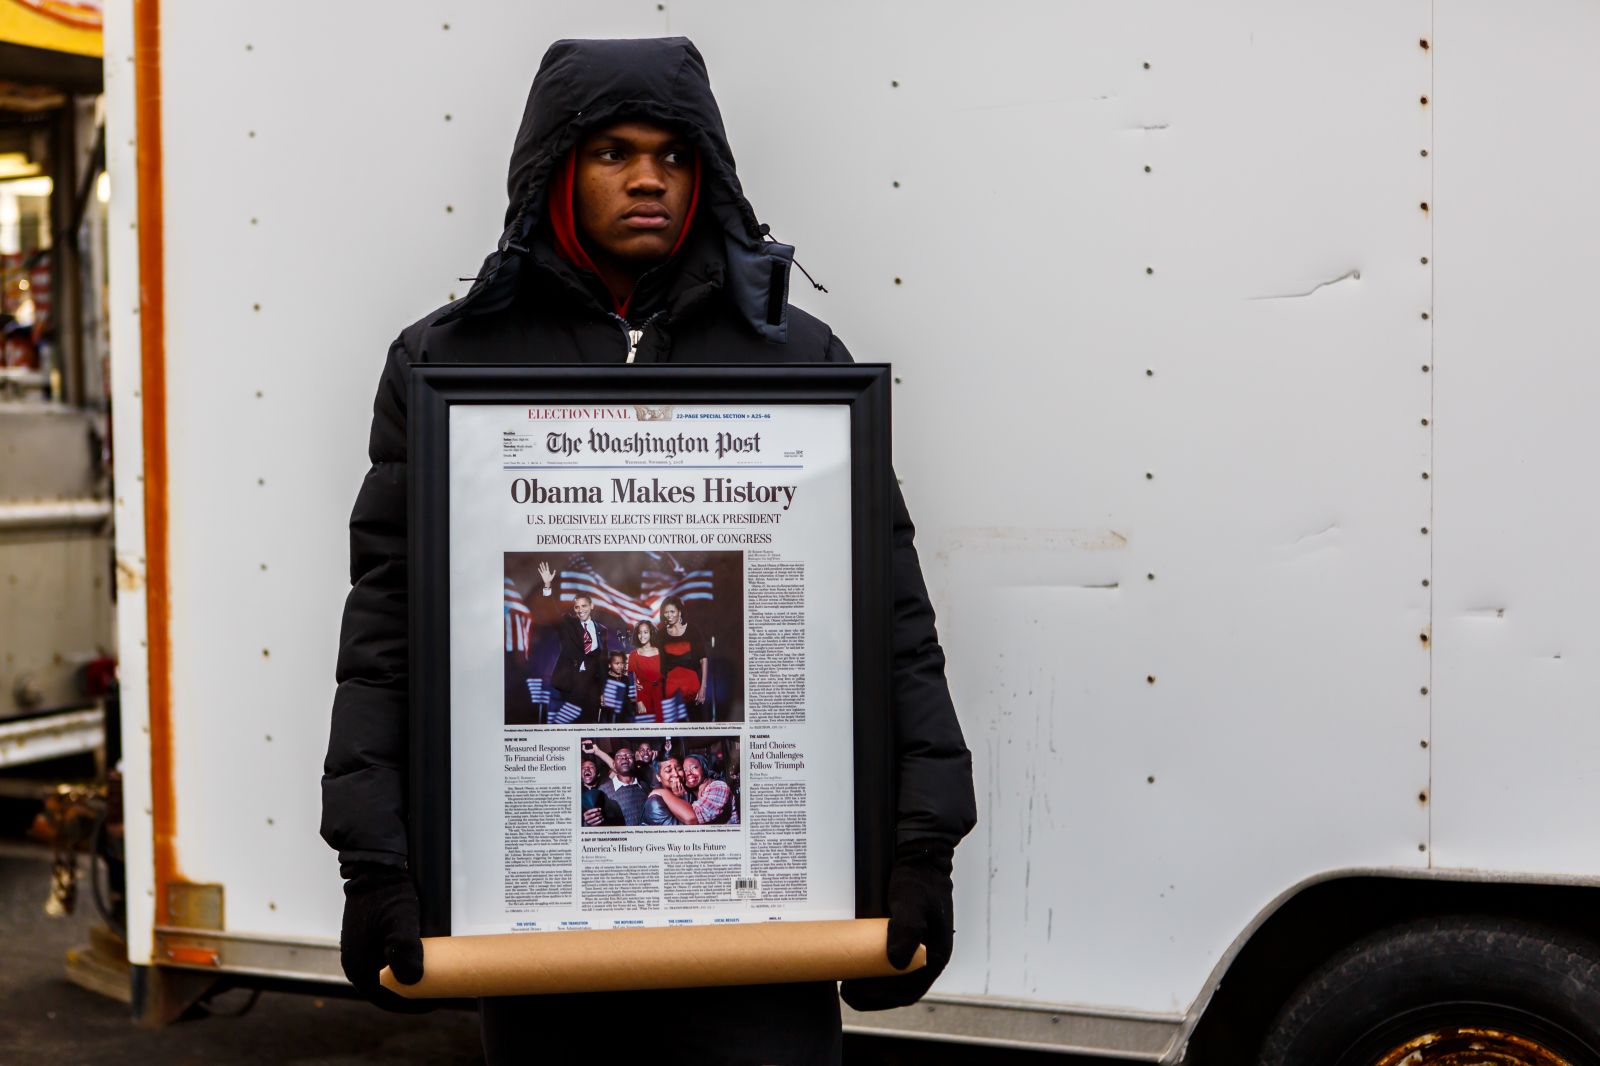 מוכר עיתונים אמריקאי אוחז שער ממוסגר של ה"וושינגטון פוסט", 21.1.13 (צילום: Chris Parypa Photography / Shutterstock)